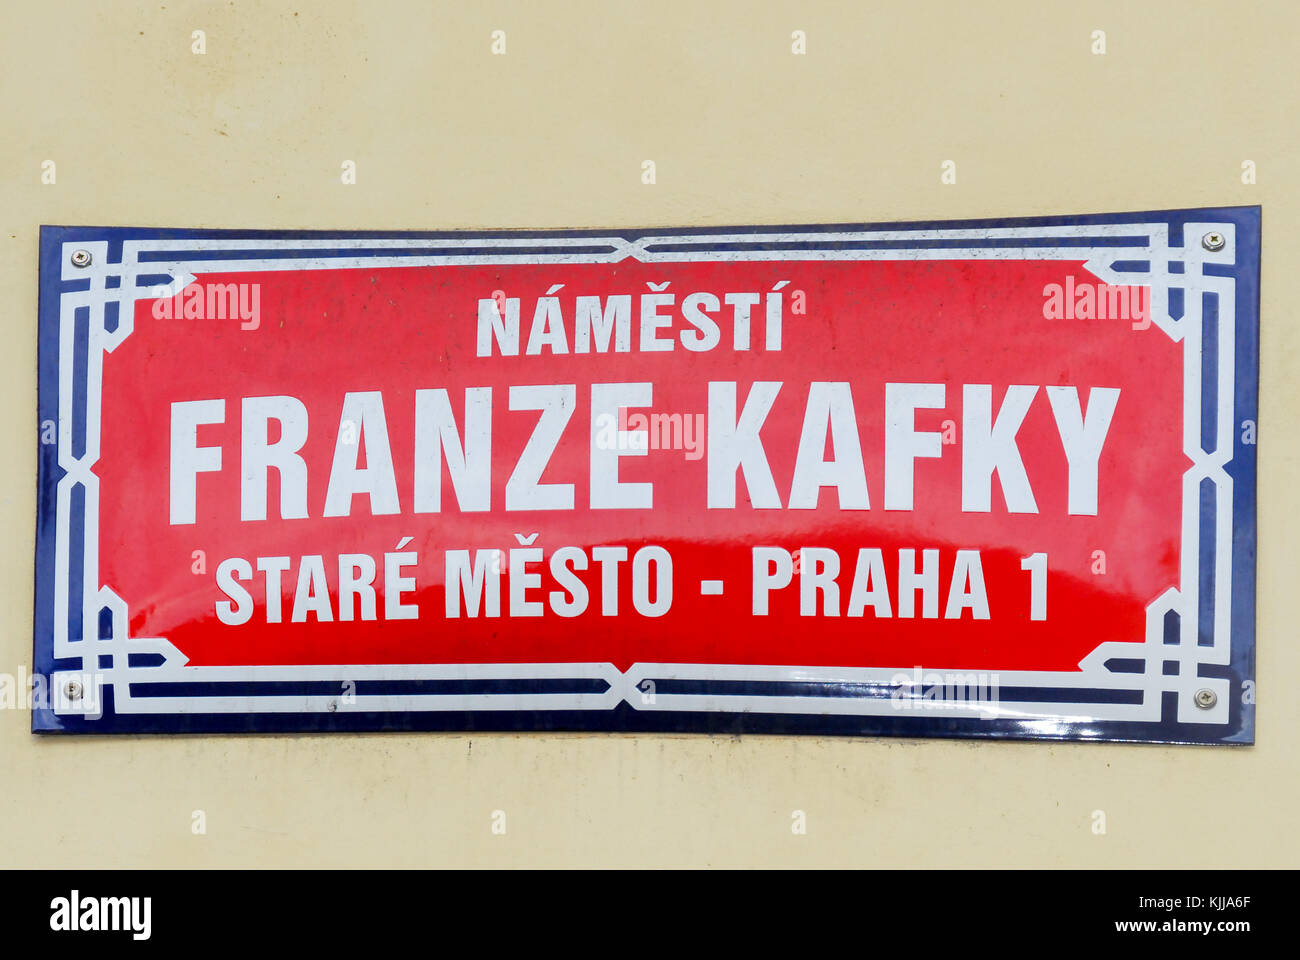 Franz Kafka Street Sign in Prague, Czech Republic. Stock Photo